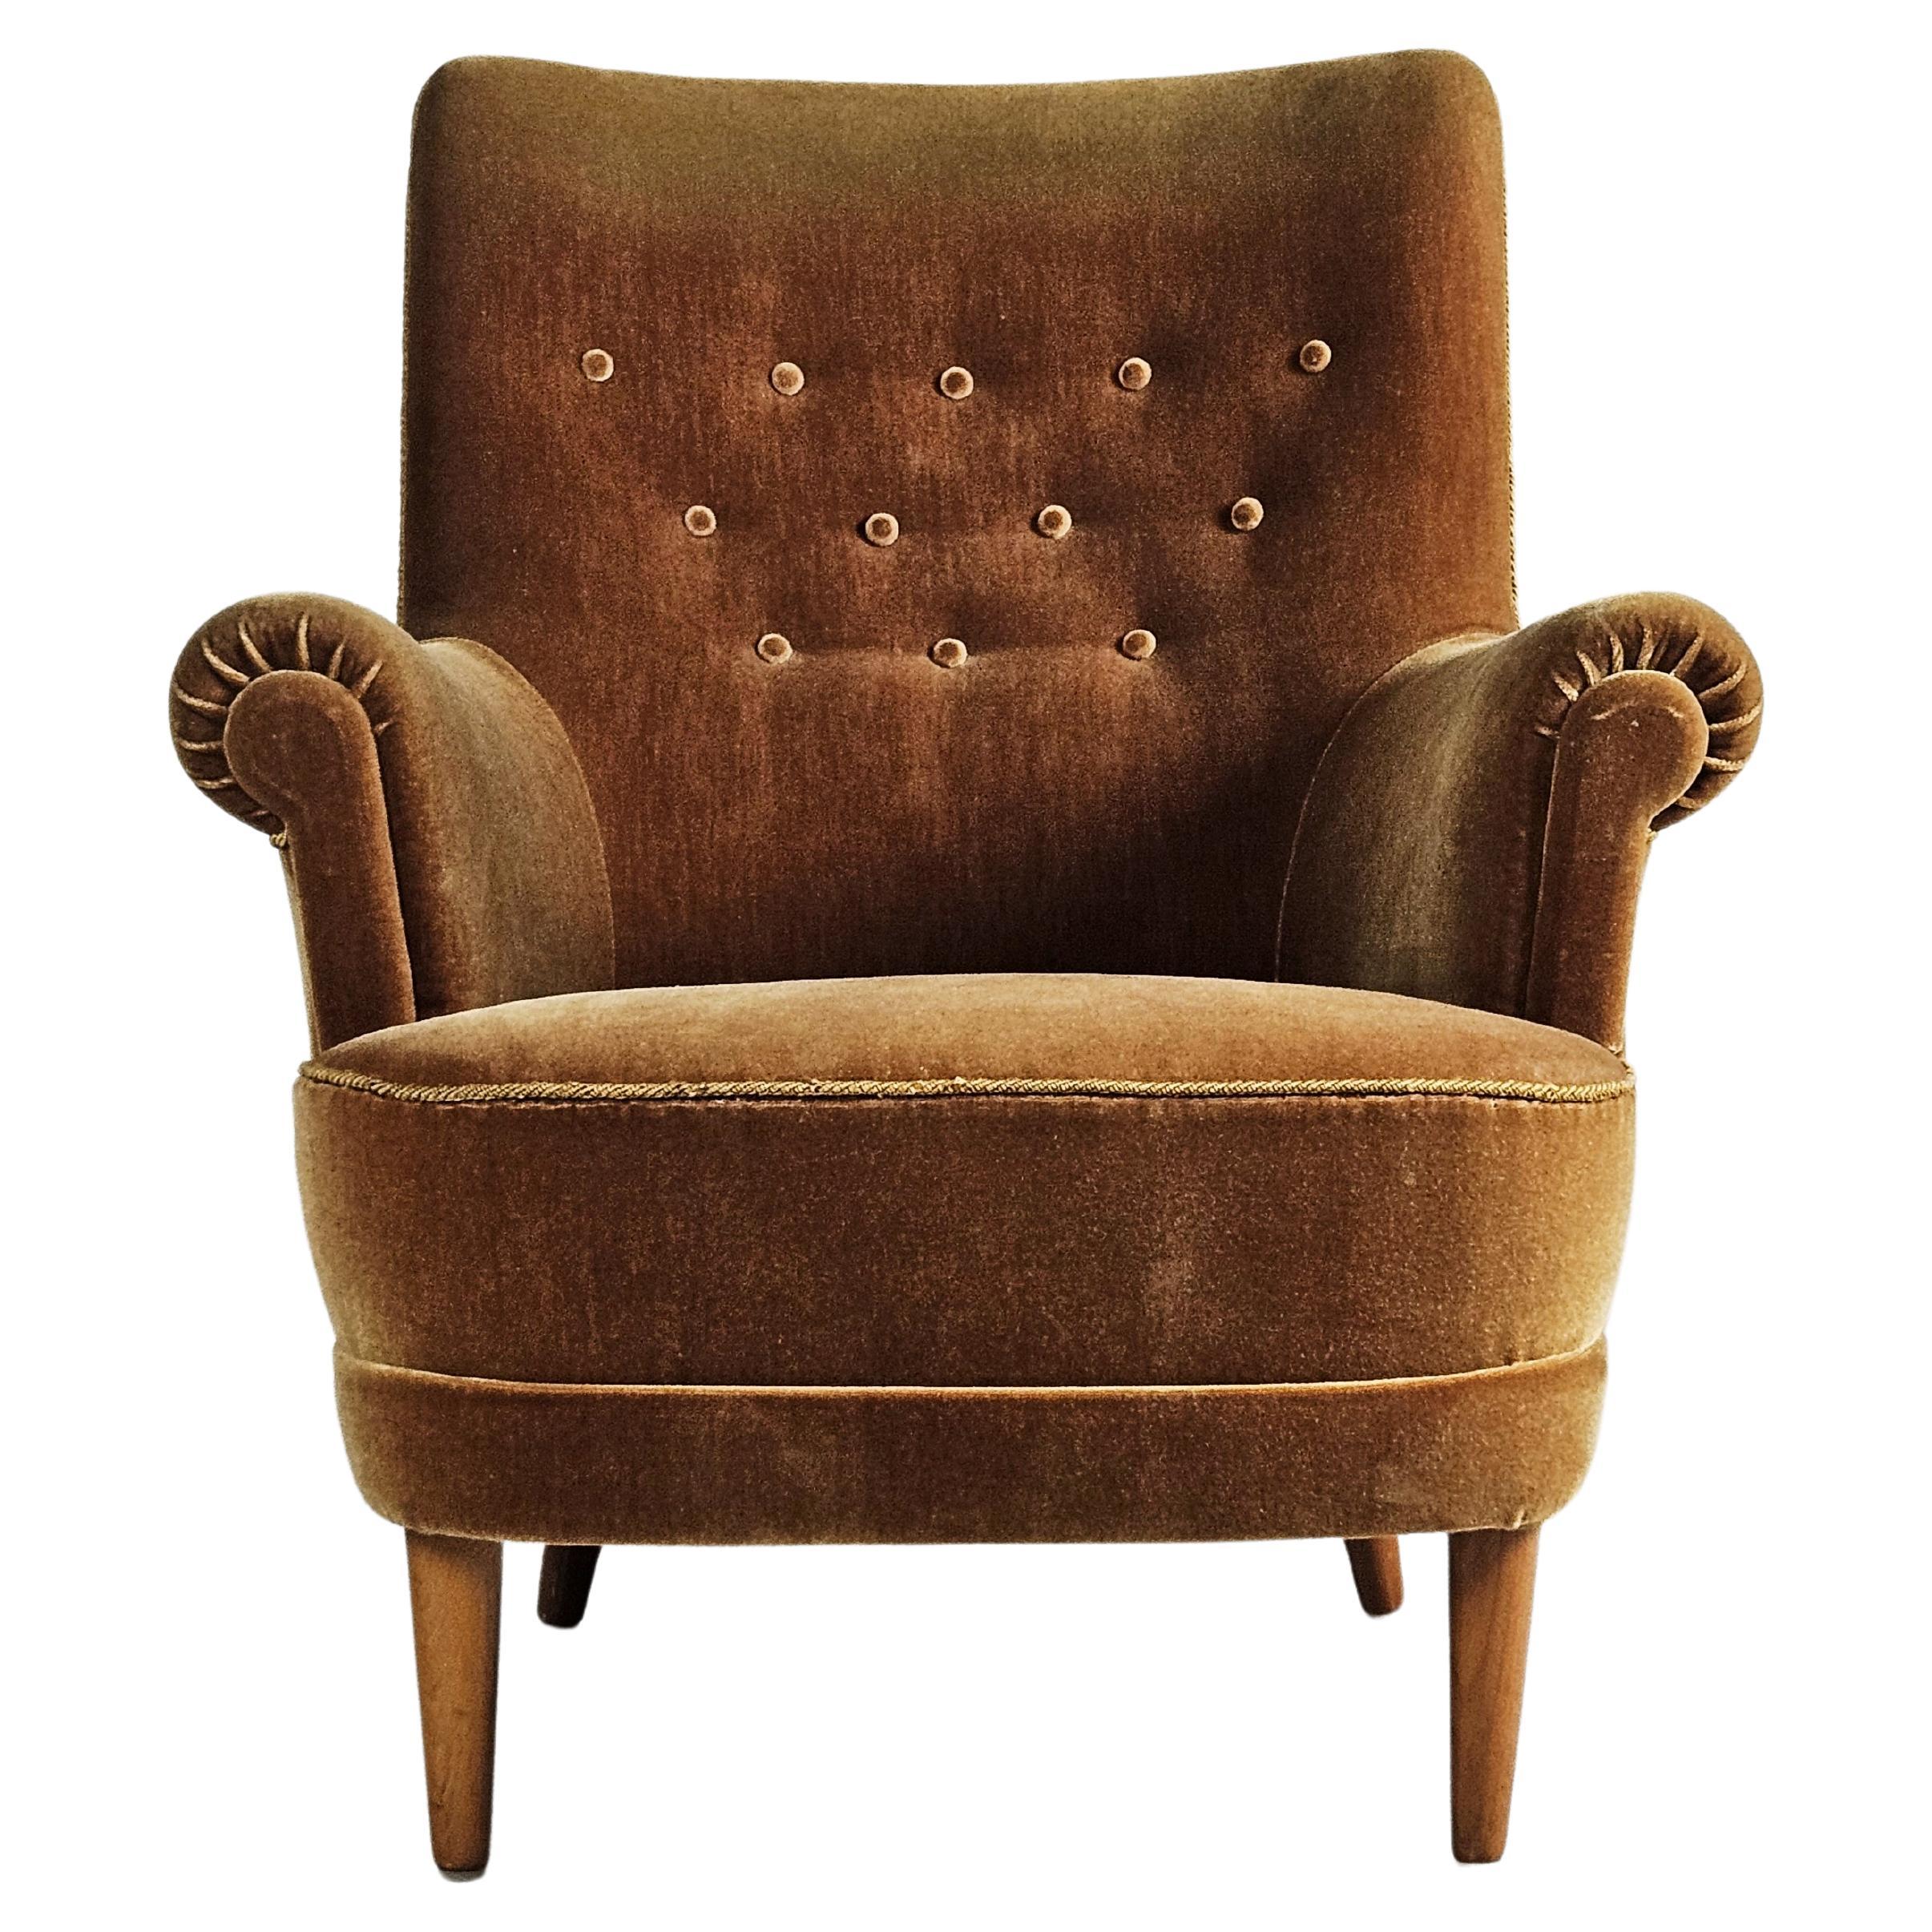 Scandinavian elegant lounge chair by Carl Malmsten, Sweden, 1950s